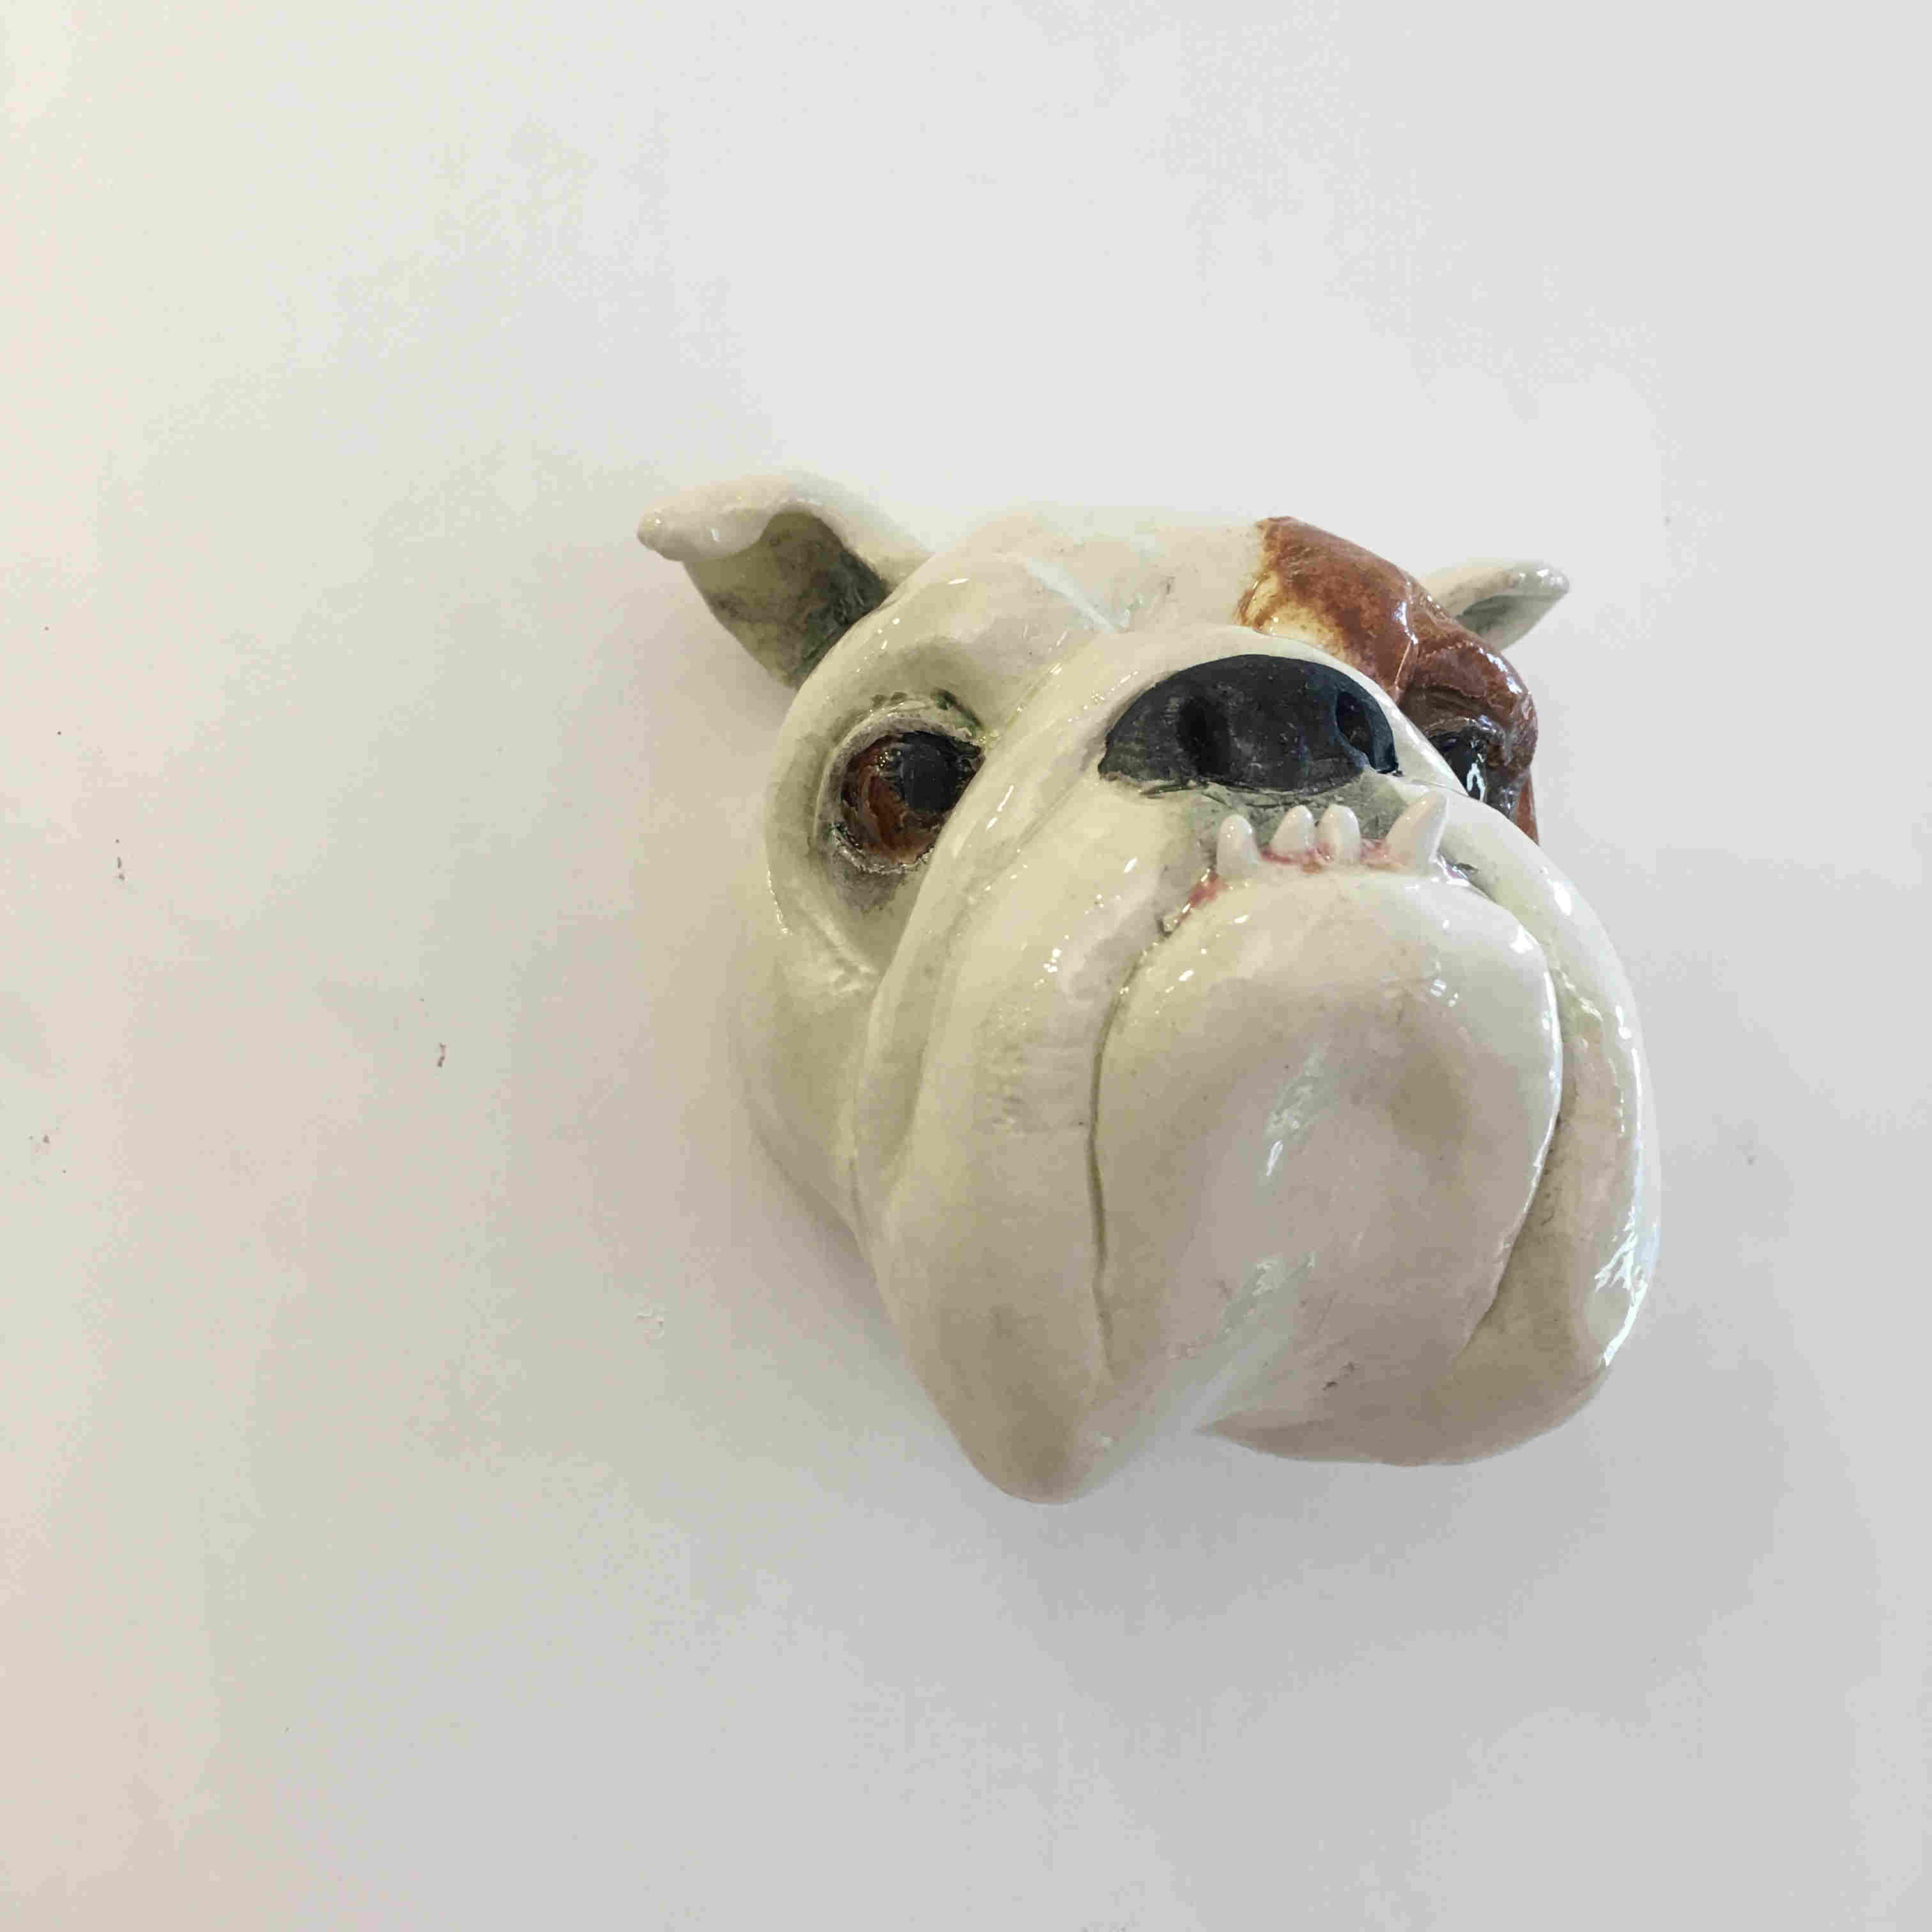 'British Bulldog "Victoria"' by artist Alex Johannsen